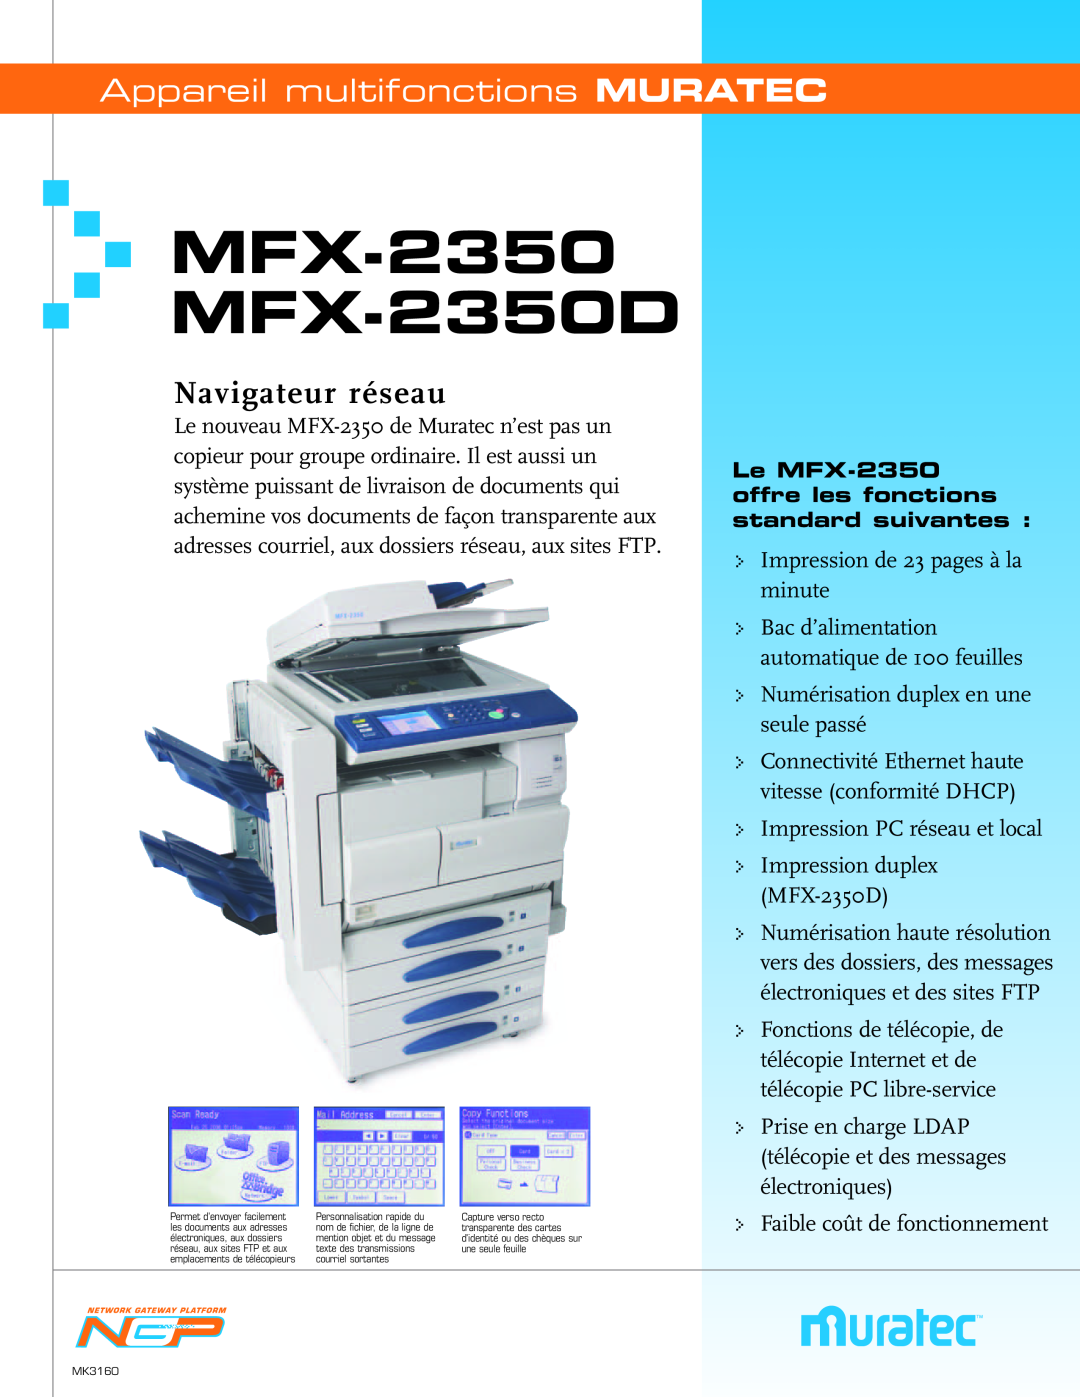 Muratec MFX-2350 manual C O M P L E T E D O C U M E N T I M A G I N G S O L U T I O N S, Copy.Print.Digitize. Deliver 